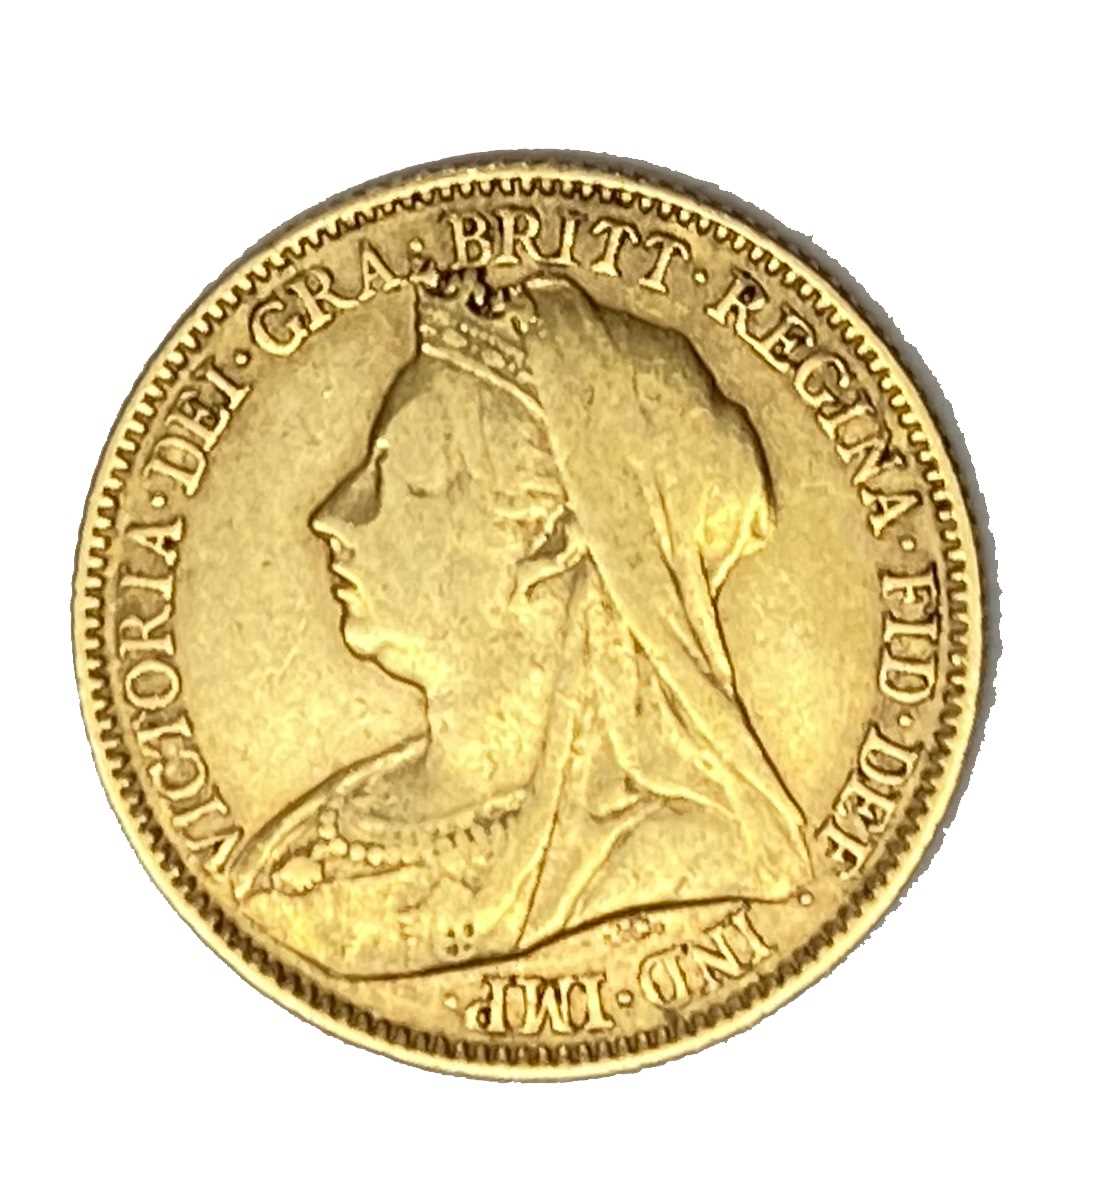 Lot 103 - Queen Victoria gold half Sovereign coin, 1894